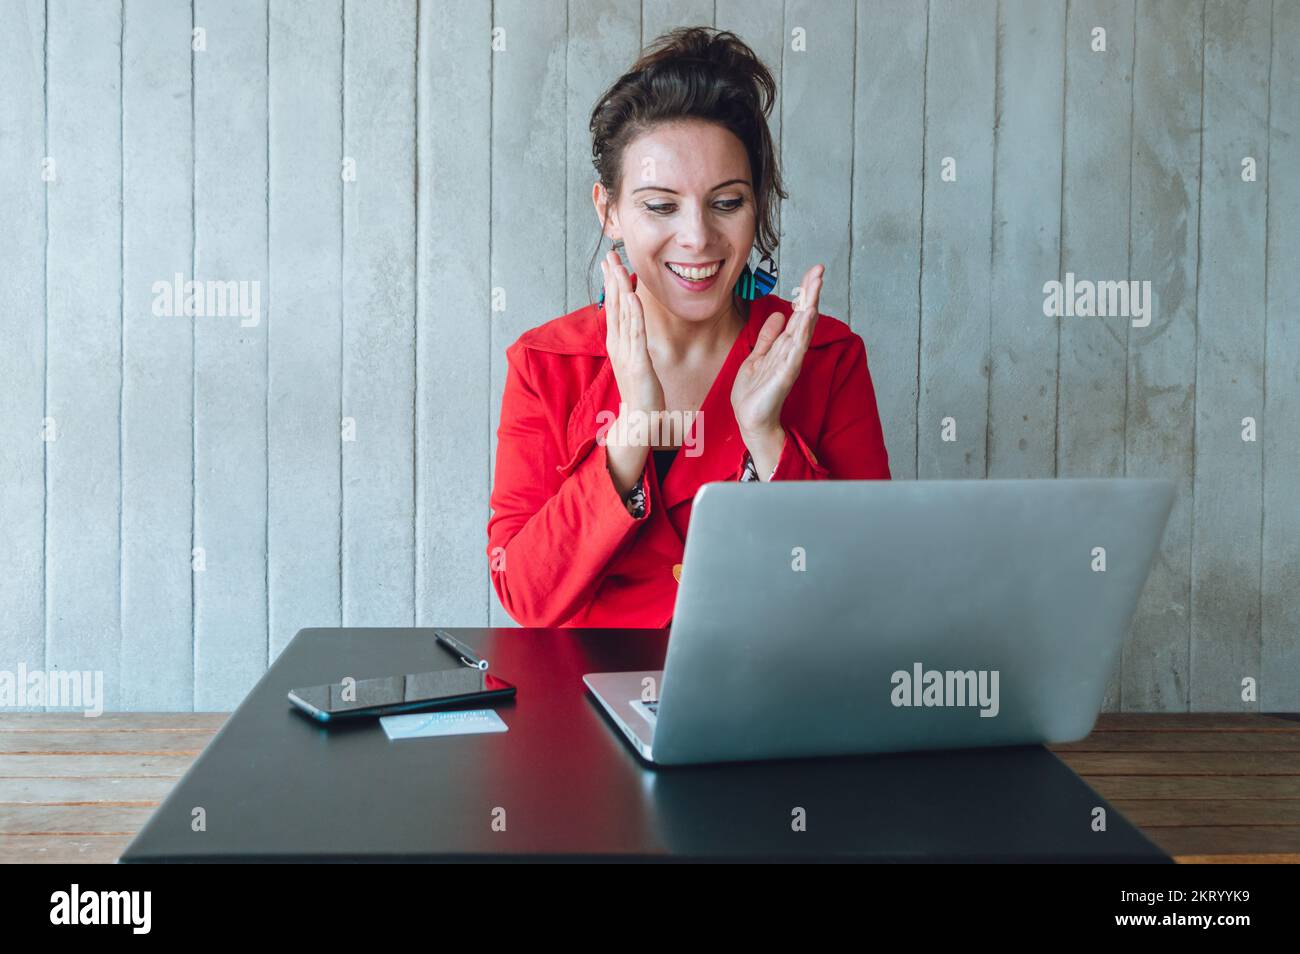 Une femme de race blanche dans un blazer rouge se réjouit de travailler avec son ordinateur portable gagnant de l'argent, assis dans un restaurant, gérant et gérant son entreprise numérique Banque D'Images